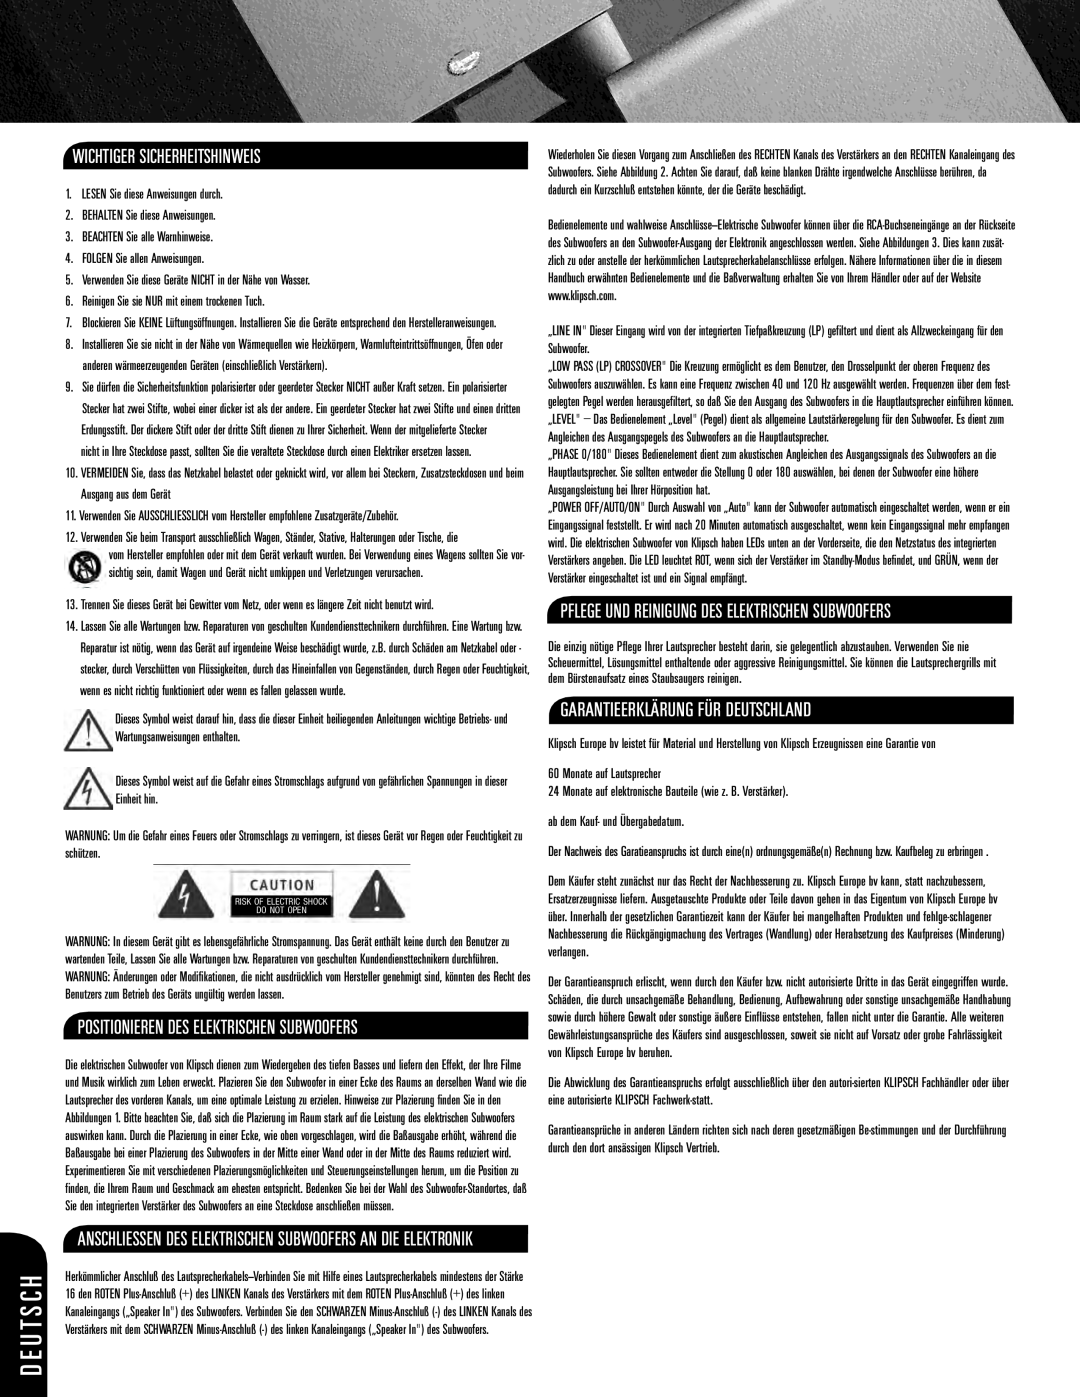 Klipsch ksw-08-new owner manual D E U T S C H, Wichtiger Sicherheitshinweis, Garantieerklärung Für Deutschland 